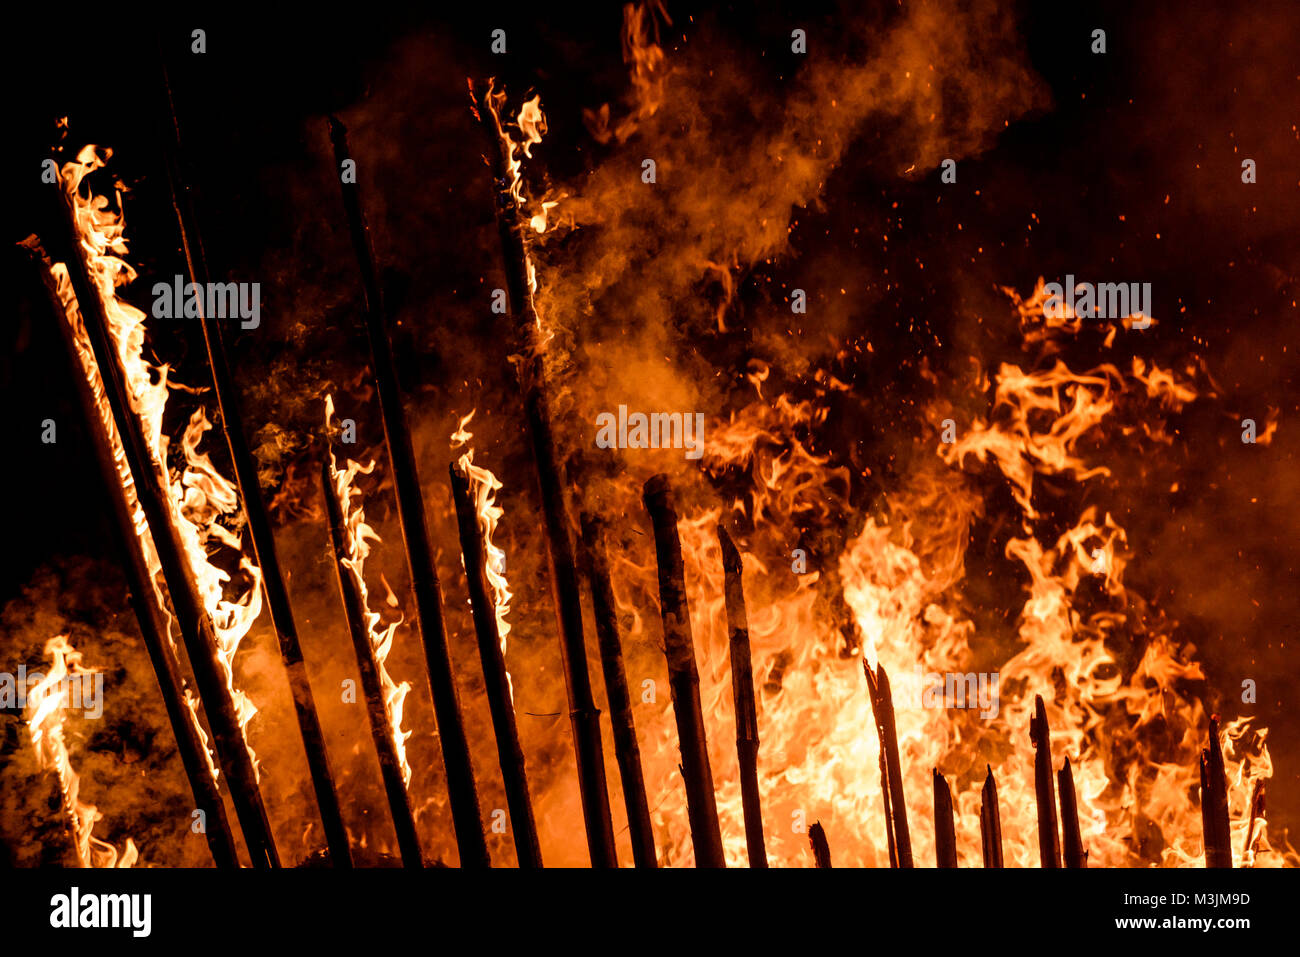 Campamento De Fuego Y La Llama De Una Antorcha Encendida De Bambú En La  Noche Fotos, retratos, imágenes y fotografía de archivo libres de derecho.  Image 18697366